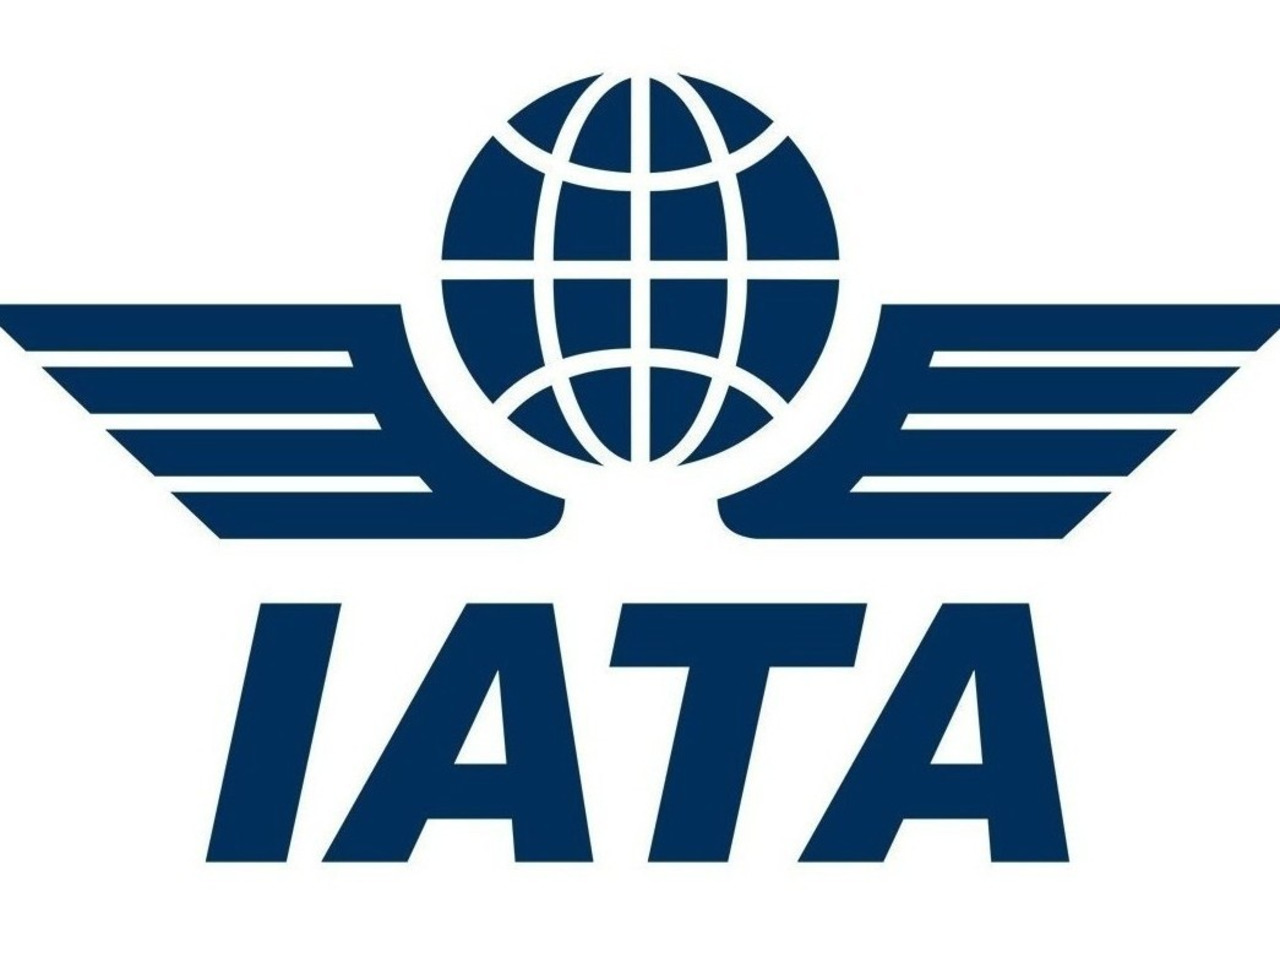 Î‘Ï€Î¿Ï„Î­Î»ÎµÏƒÎ¼Î± ÎµÎ¹ÎºÏŒÎ½Î±Ï‚ Î³Î¹Î± IATA Launches Diversity & Inclusion Awards - Qatar Airways Commits to Sponsorship